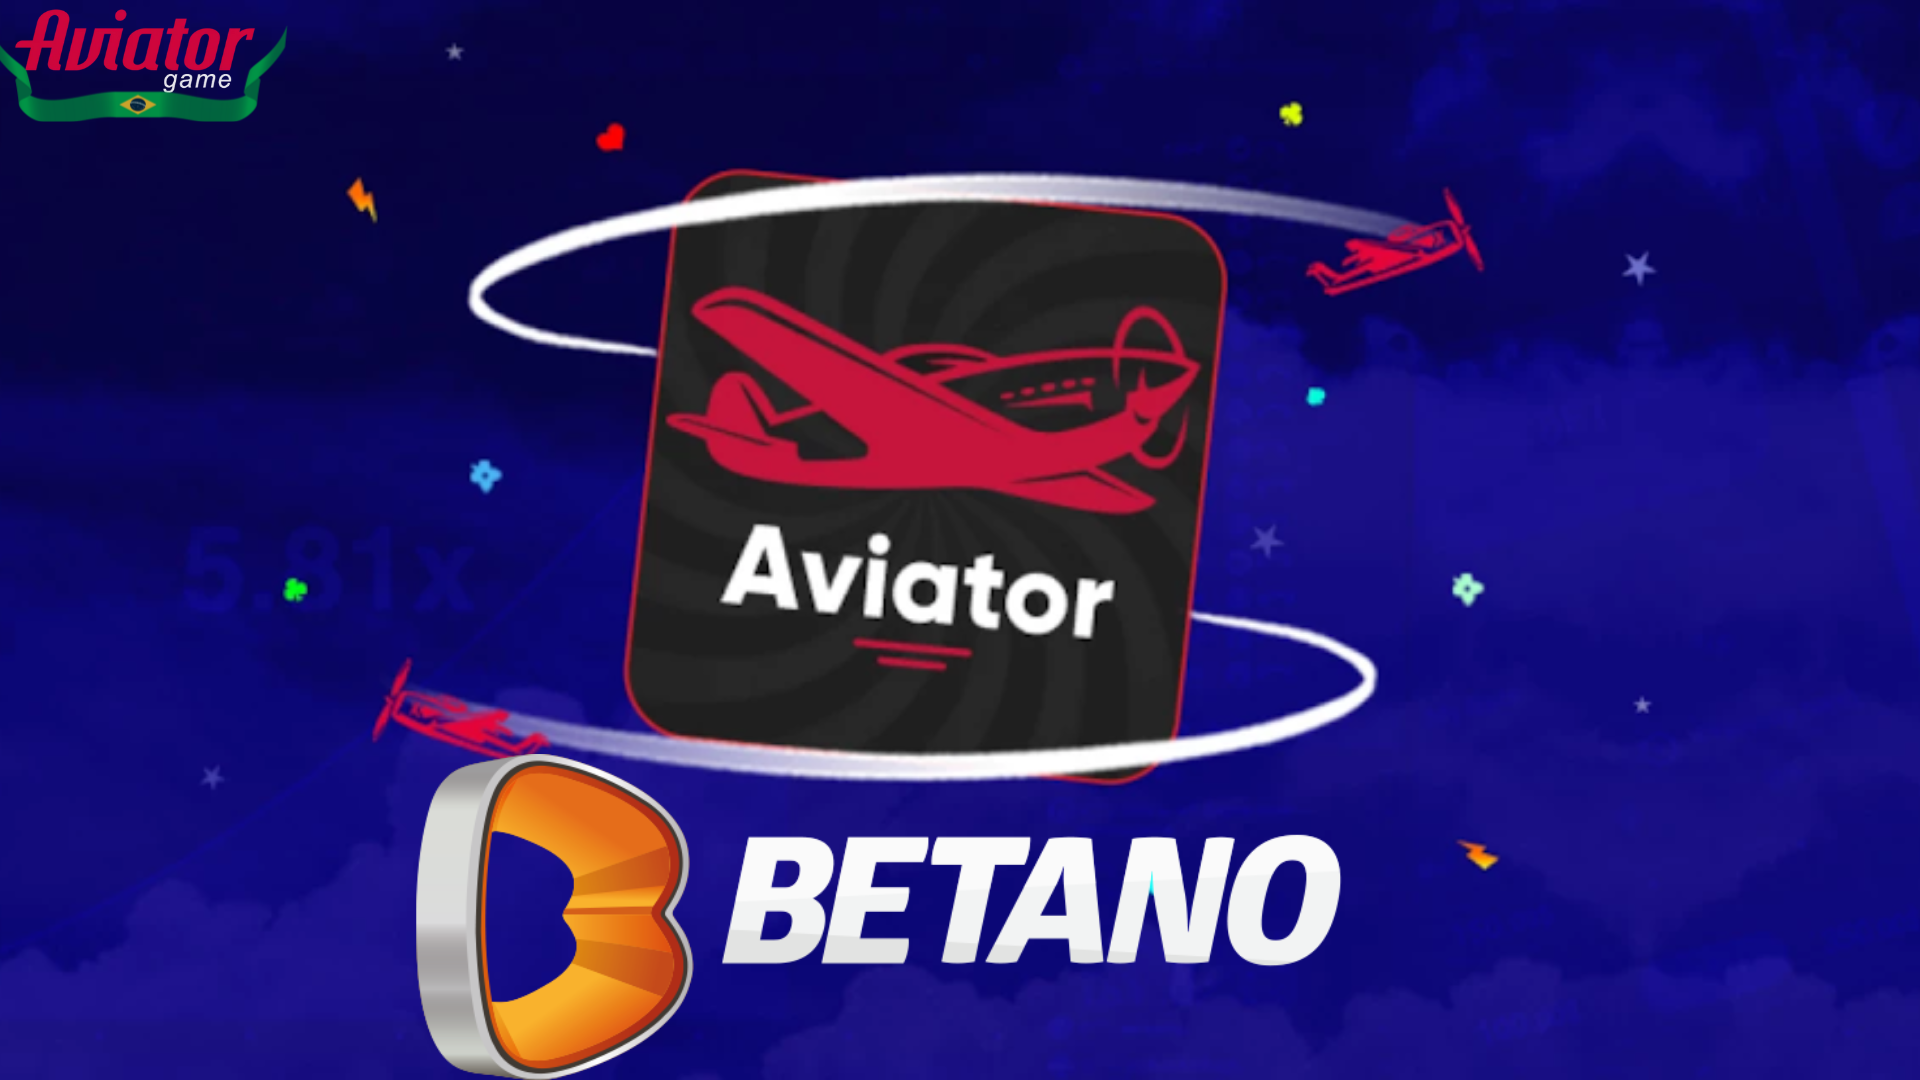 Aviator Betano: O jogo que pode te fazer rico!